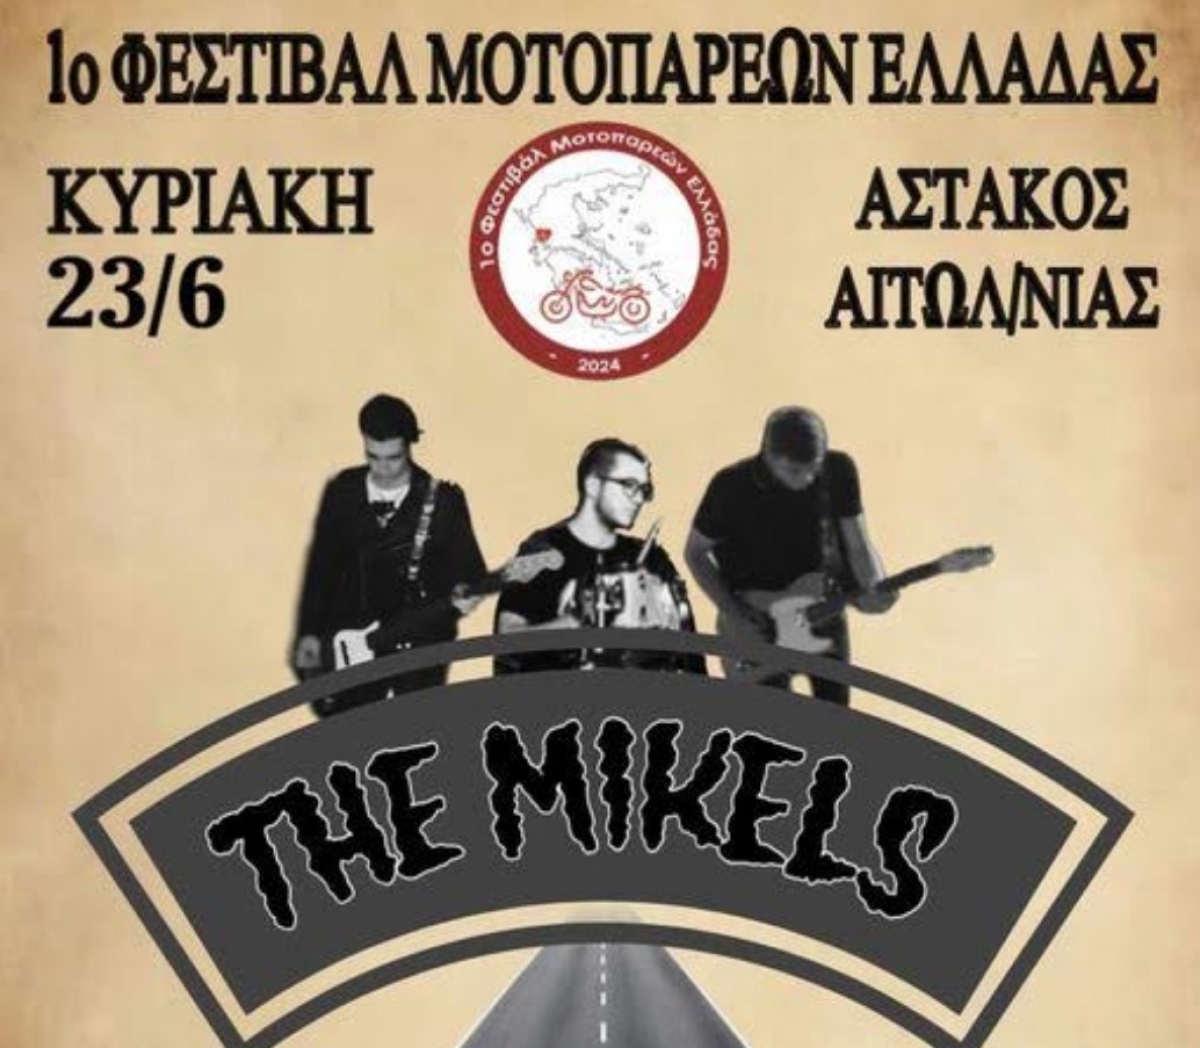 1o Φεστιβάλ Μοτοπαρεών Ελλάδος σε Αστακό και Μύτικα με τους Mikels επί σκηνής (Κυρ 23/6/2024)